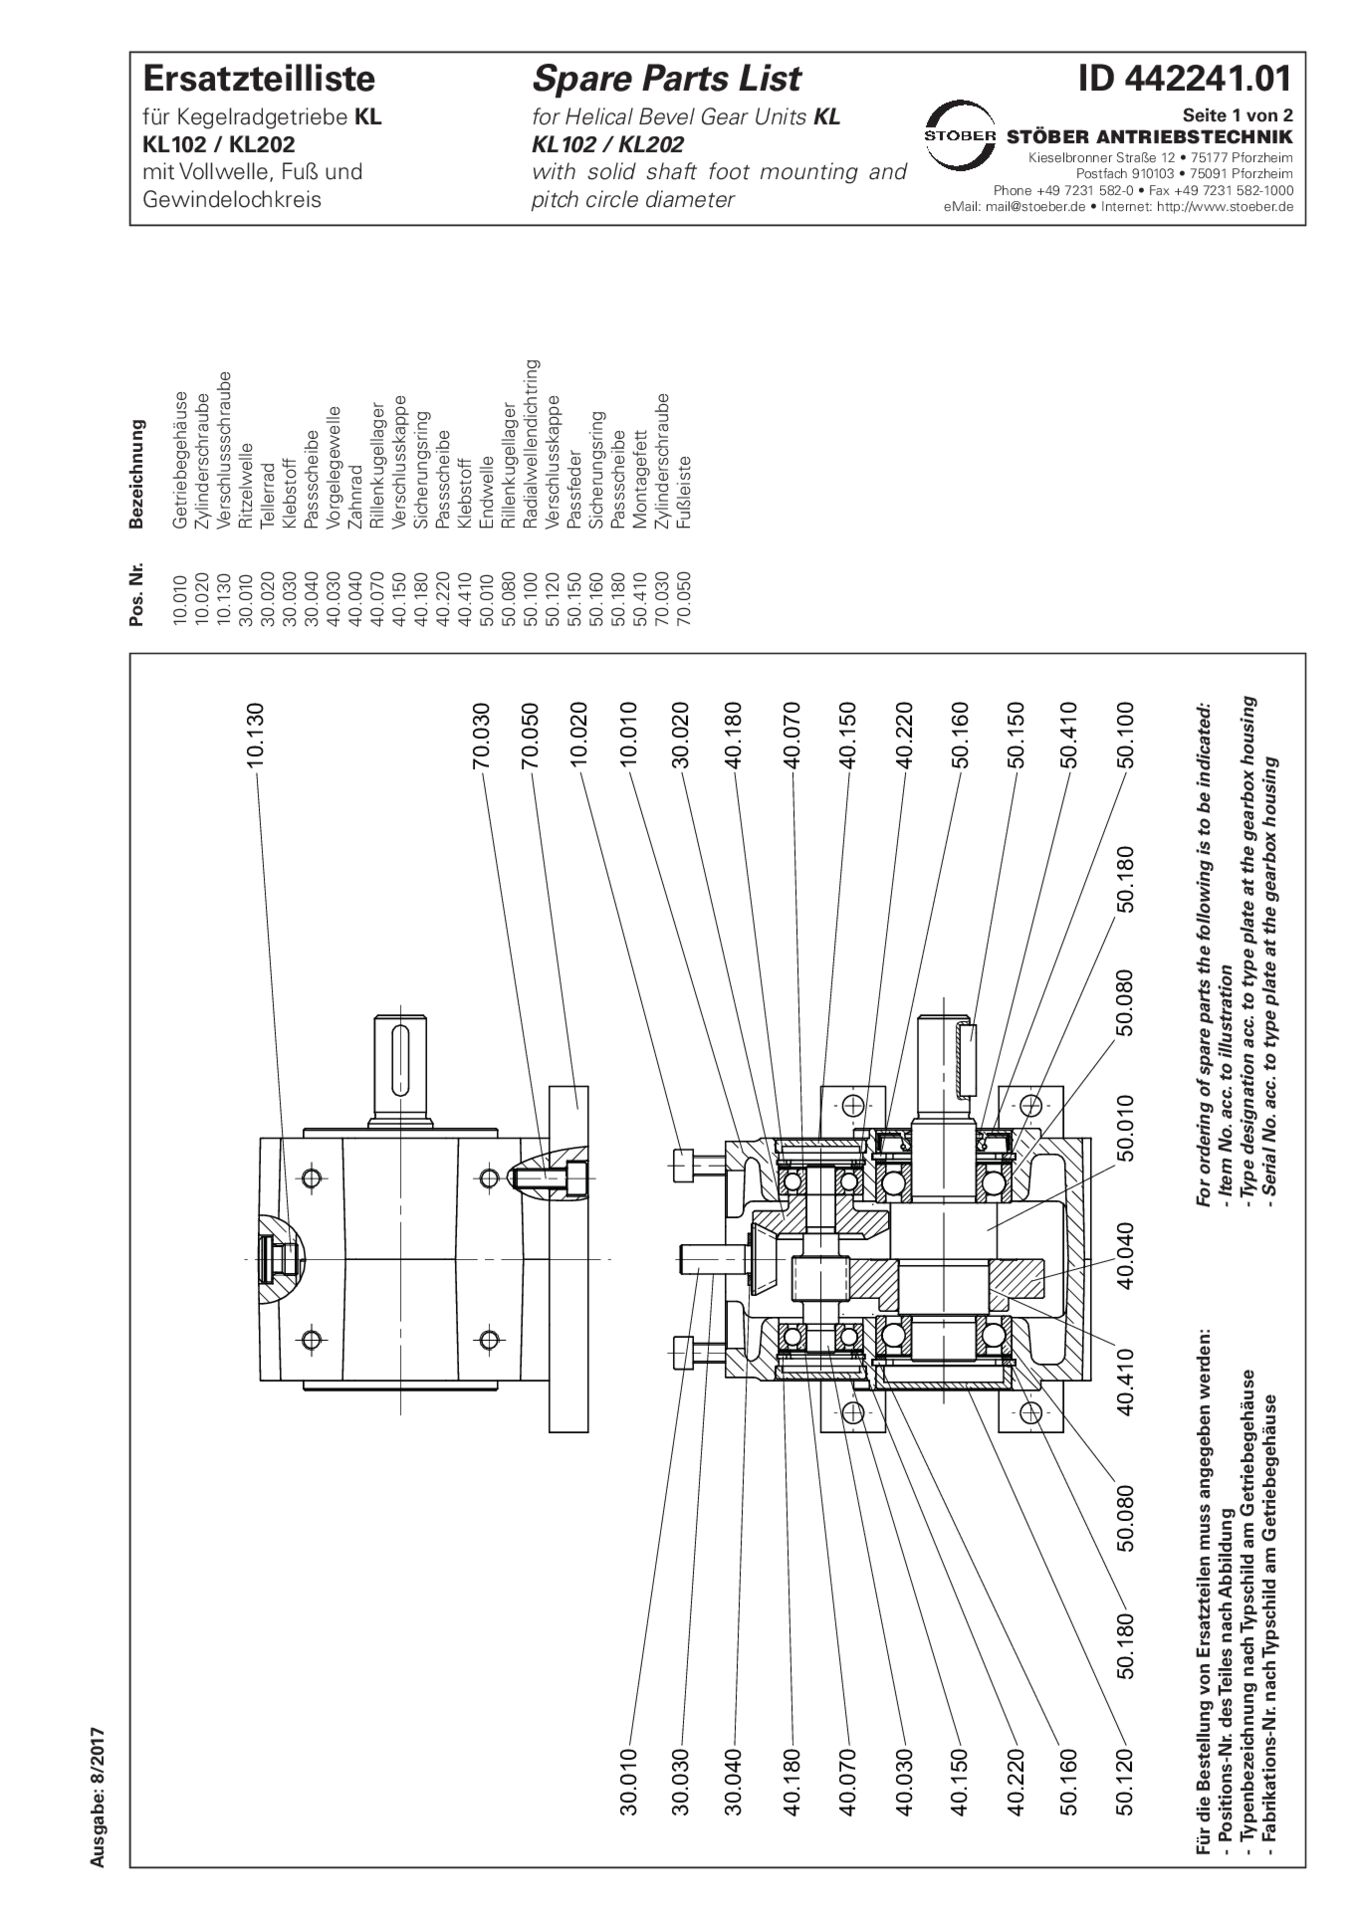 Ersatzteilliste Kegelradgetriebe KL102 KL202 PNG GNGReplacement parts list helical bevel gear units KL102 KL202 PNG GNG